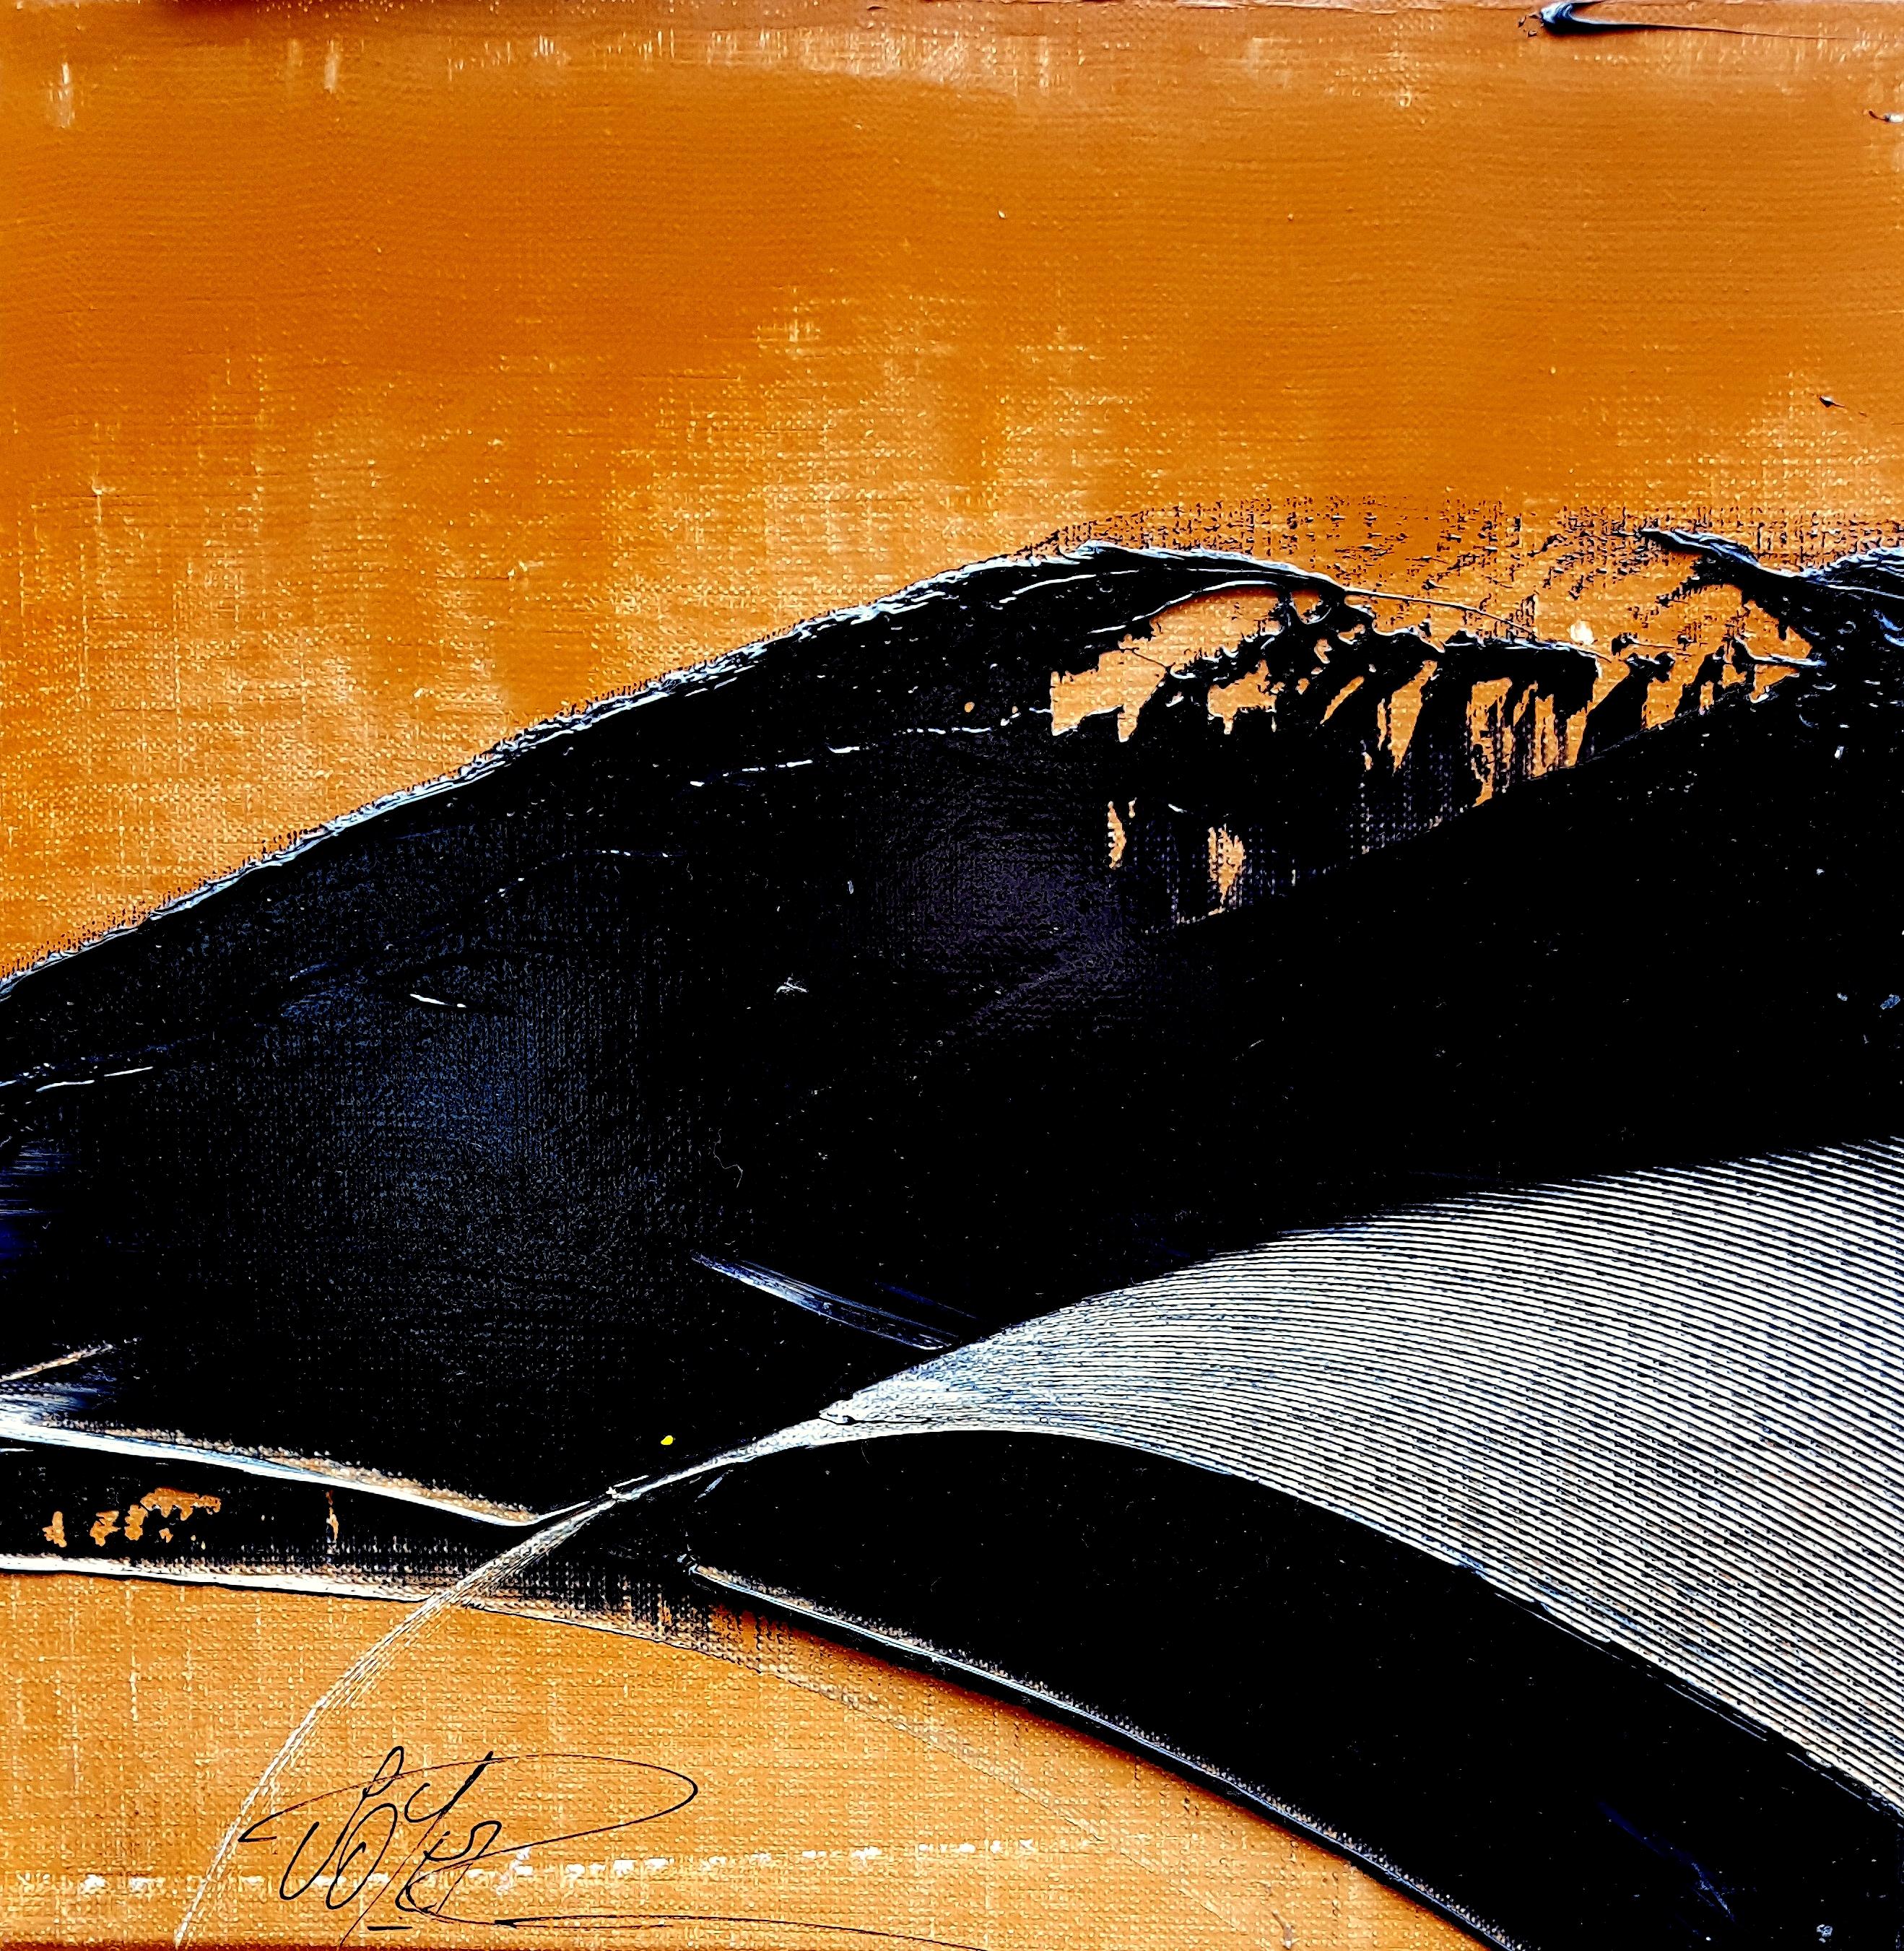 Abstract Painting Jean Soyer - Petite vague noire sur fond ocre - Peinture à l'huile - Paysage abstrait